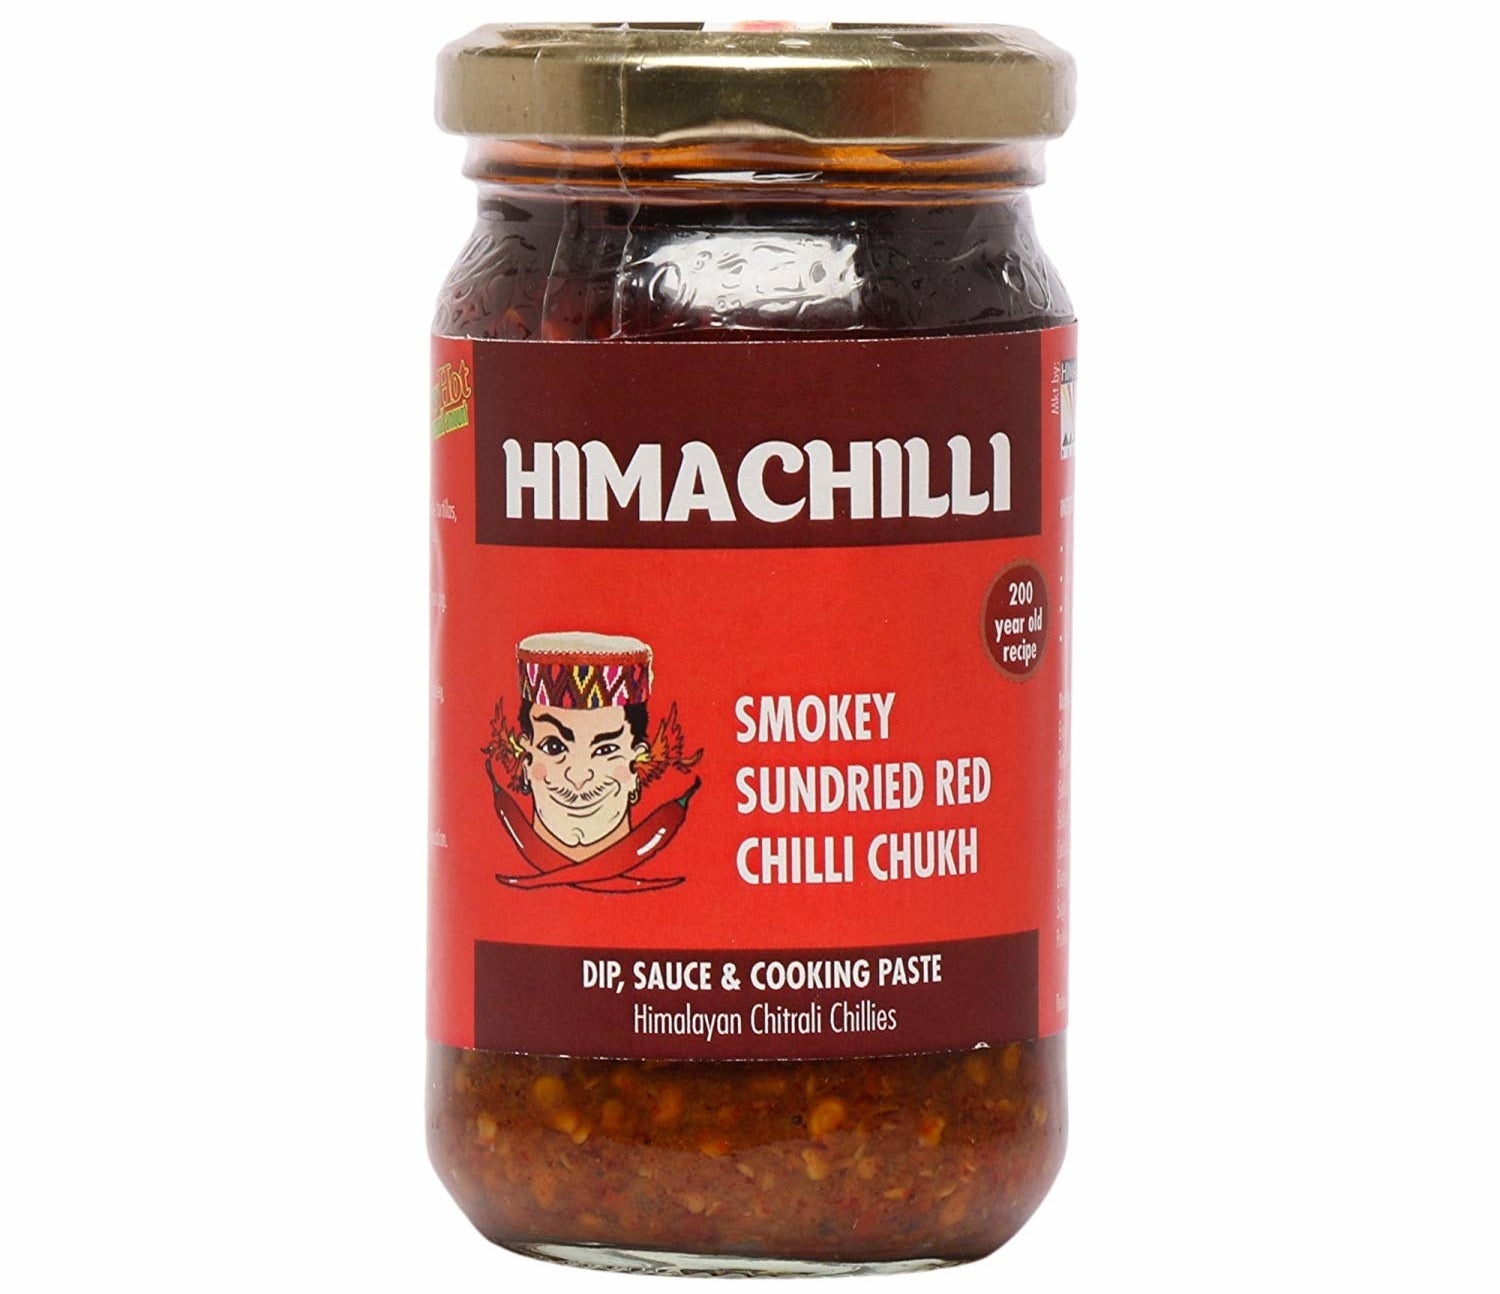 A bottle of smokey red chilli chukh.